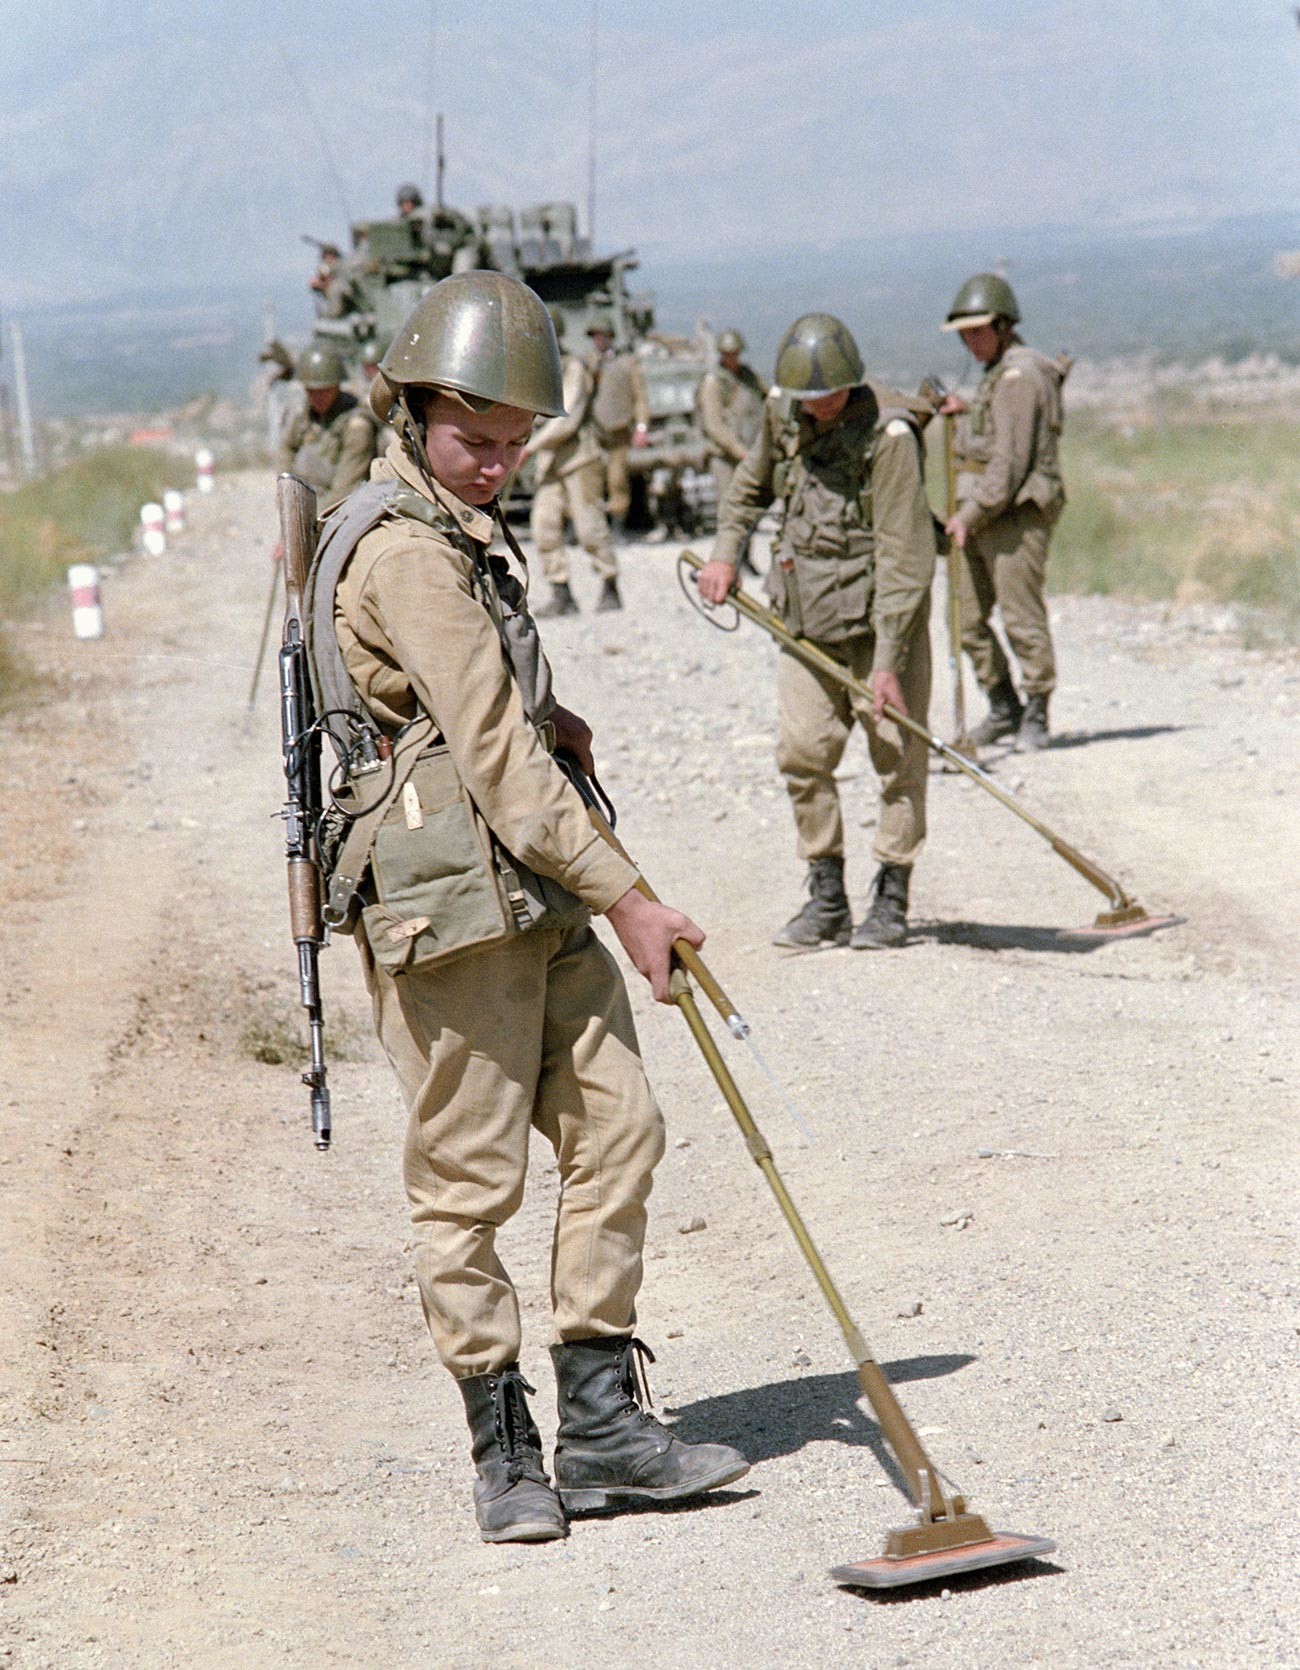 Soviet troops demine a road in Afghanistan.